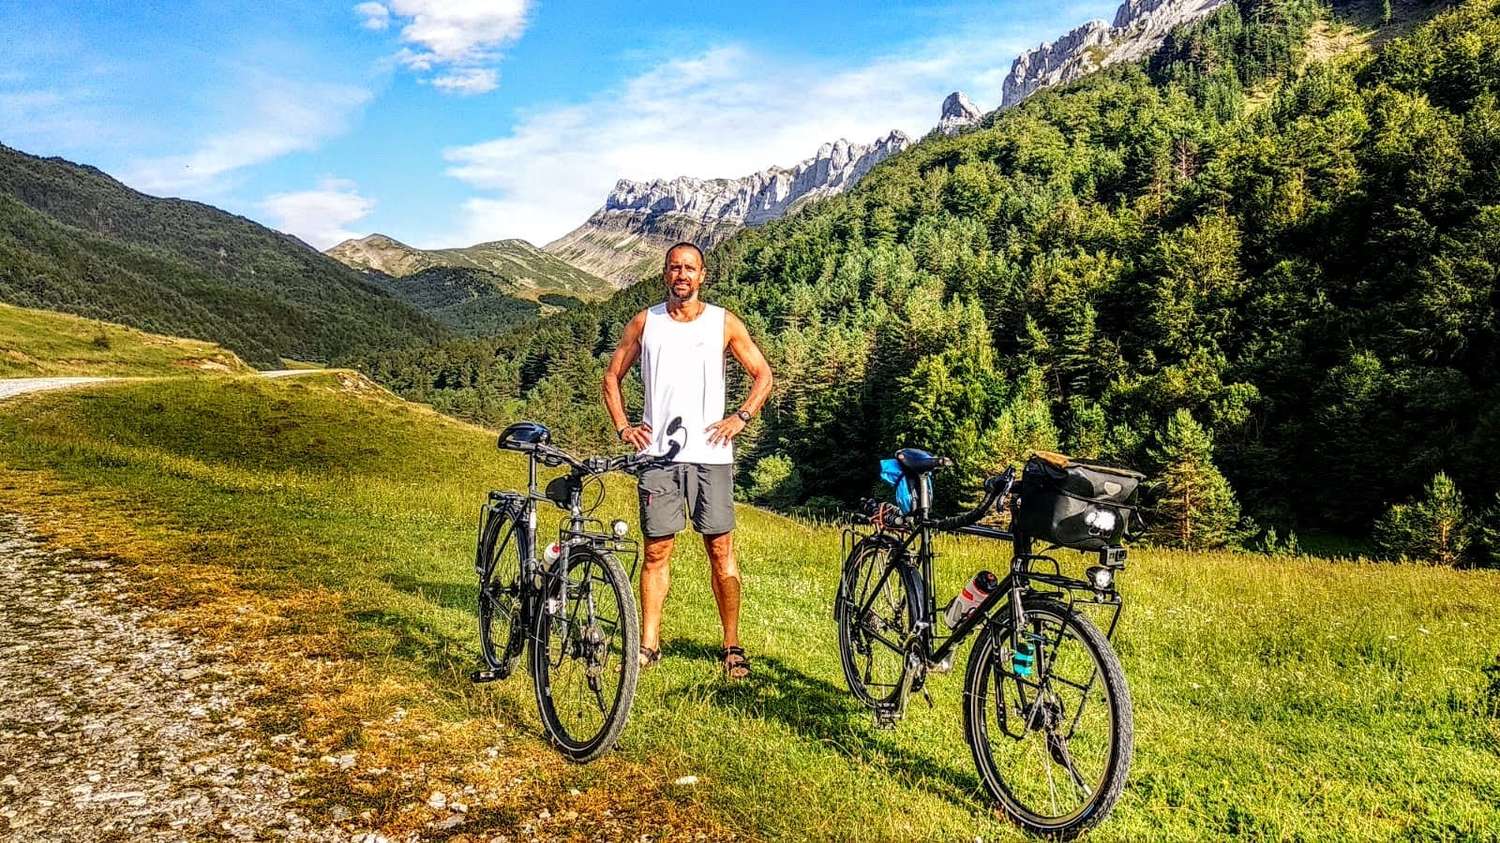 Conoce la historia de Diego Manceñido, el tandilense que recorre el mundo en bicicleta